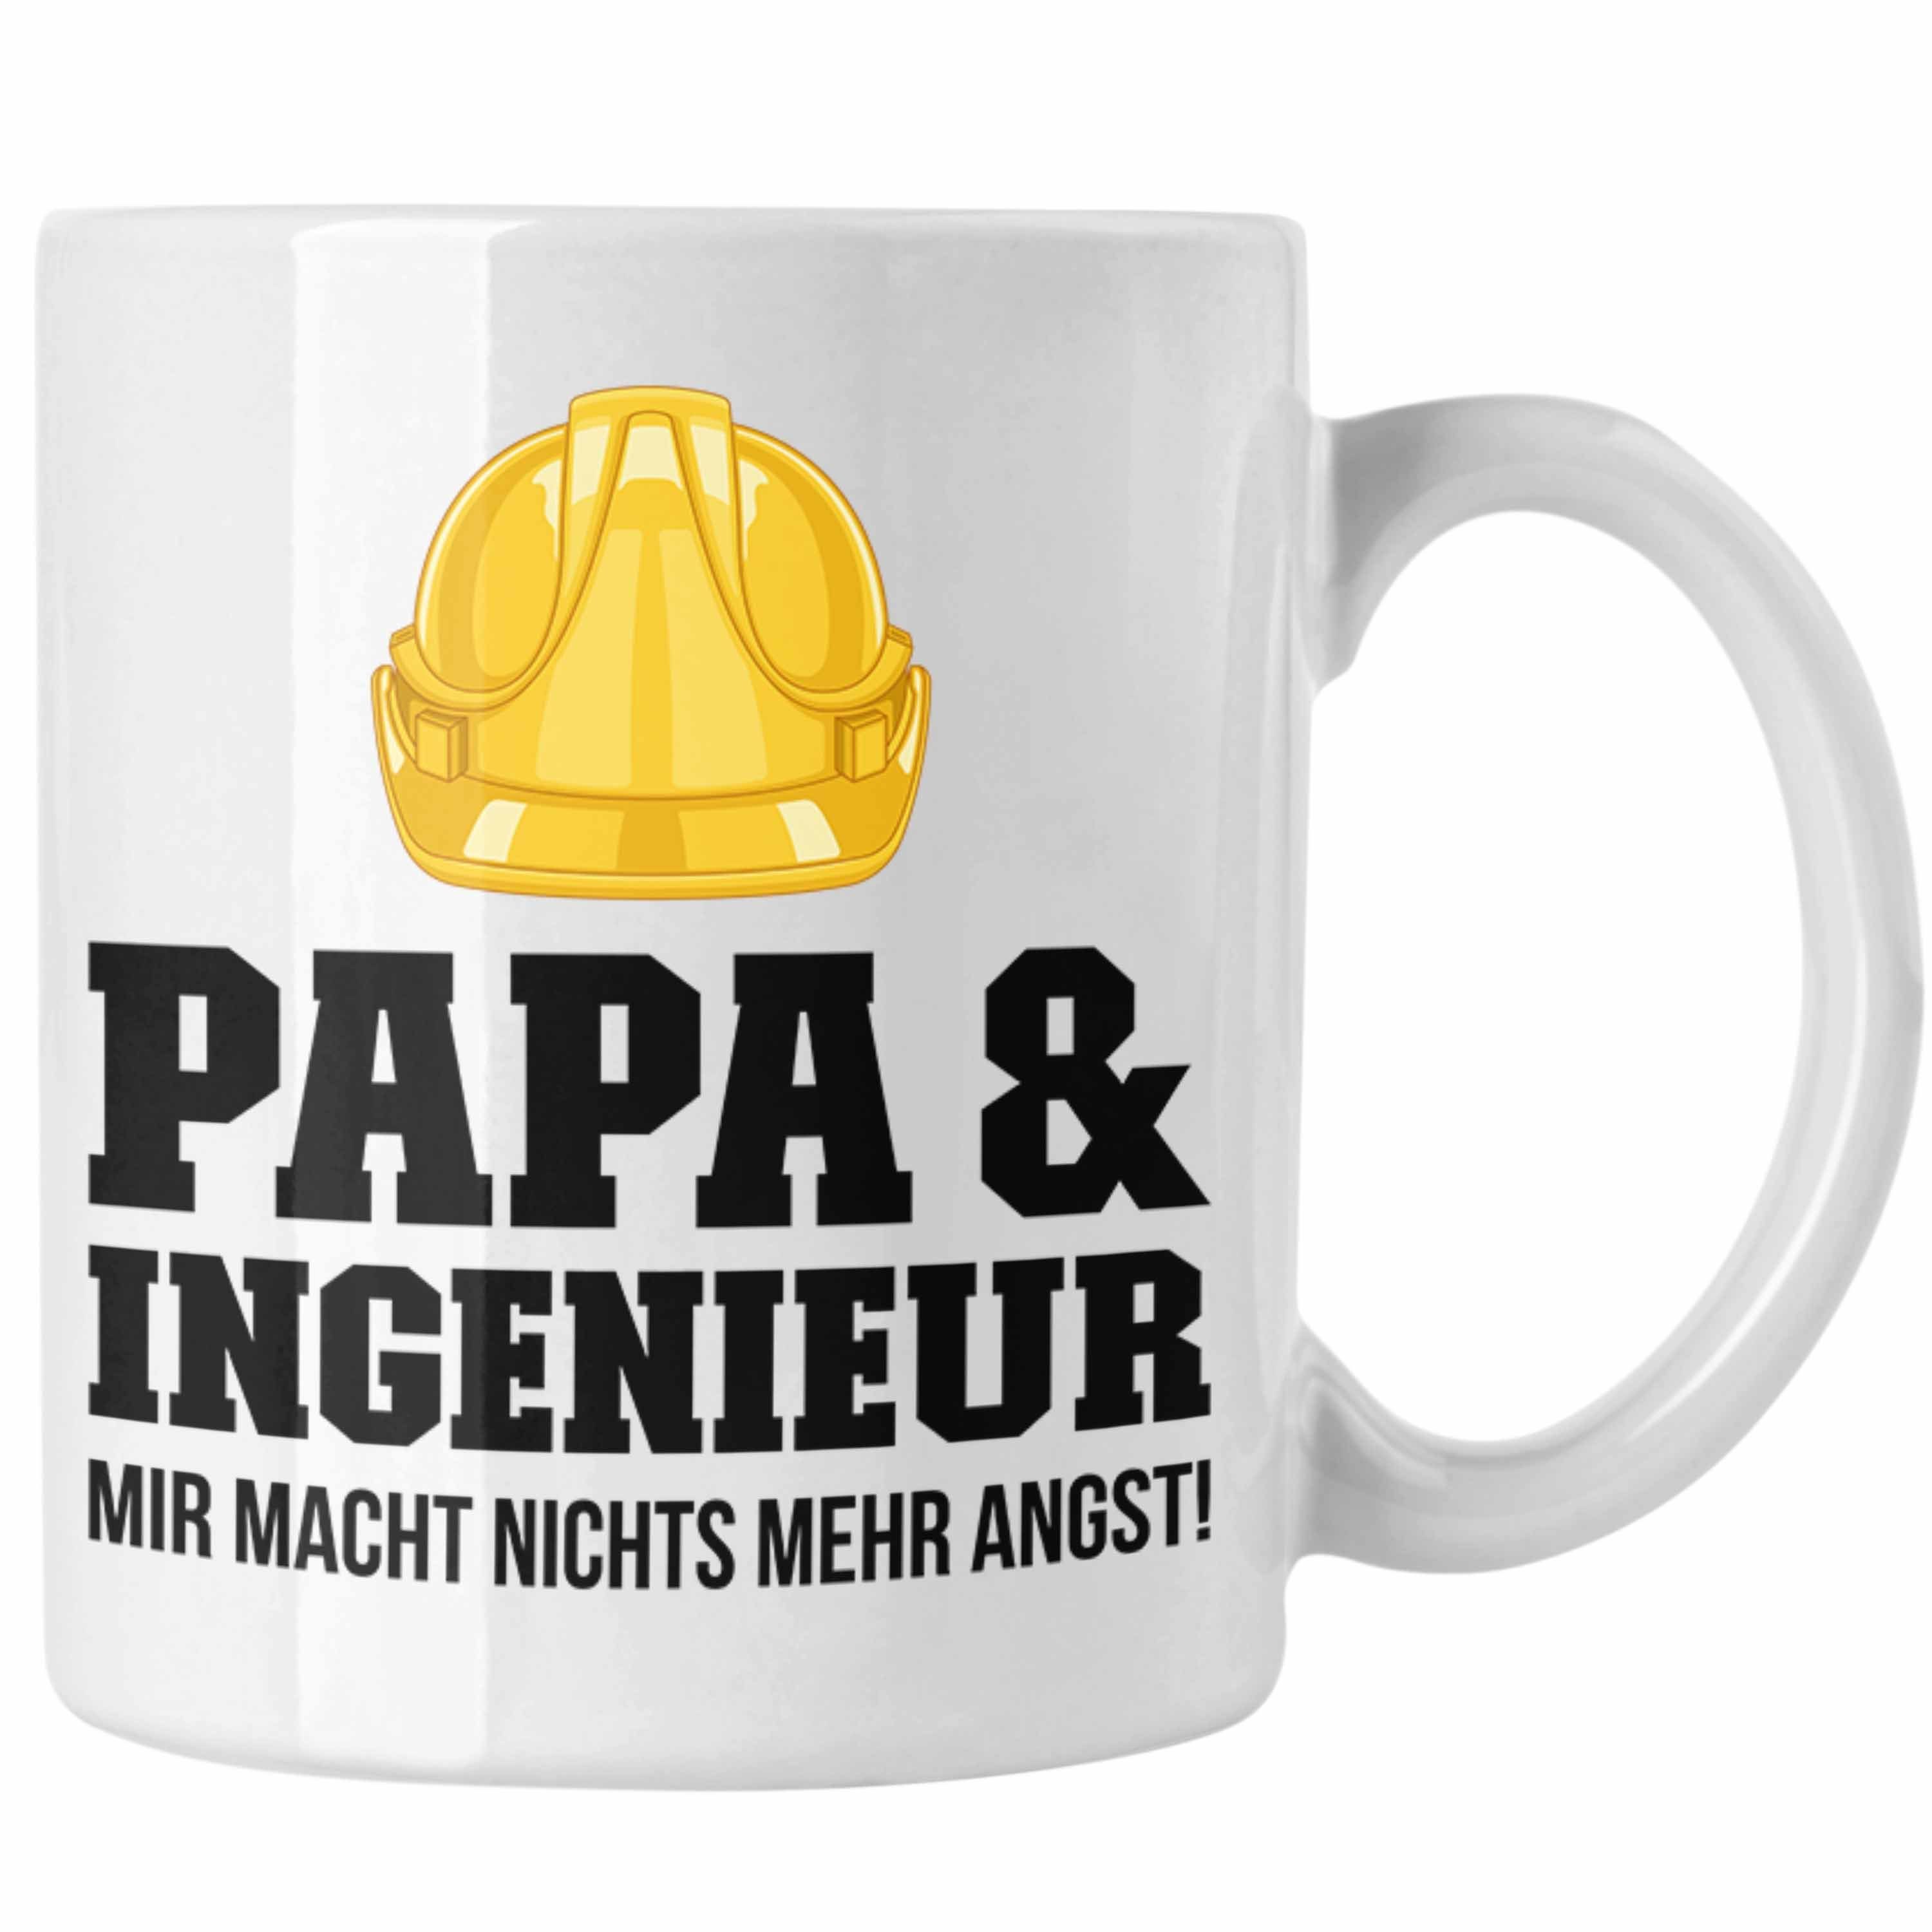 Trendation Tasse Trendation Kaffeetasse Tasse - Papa Weiss Ingenieur Gadget Ingeneur Geschenk Geschenkidee